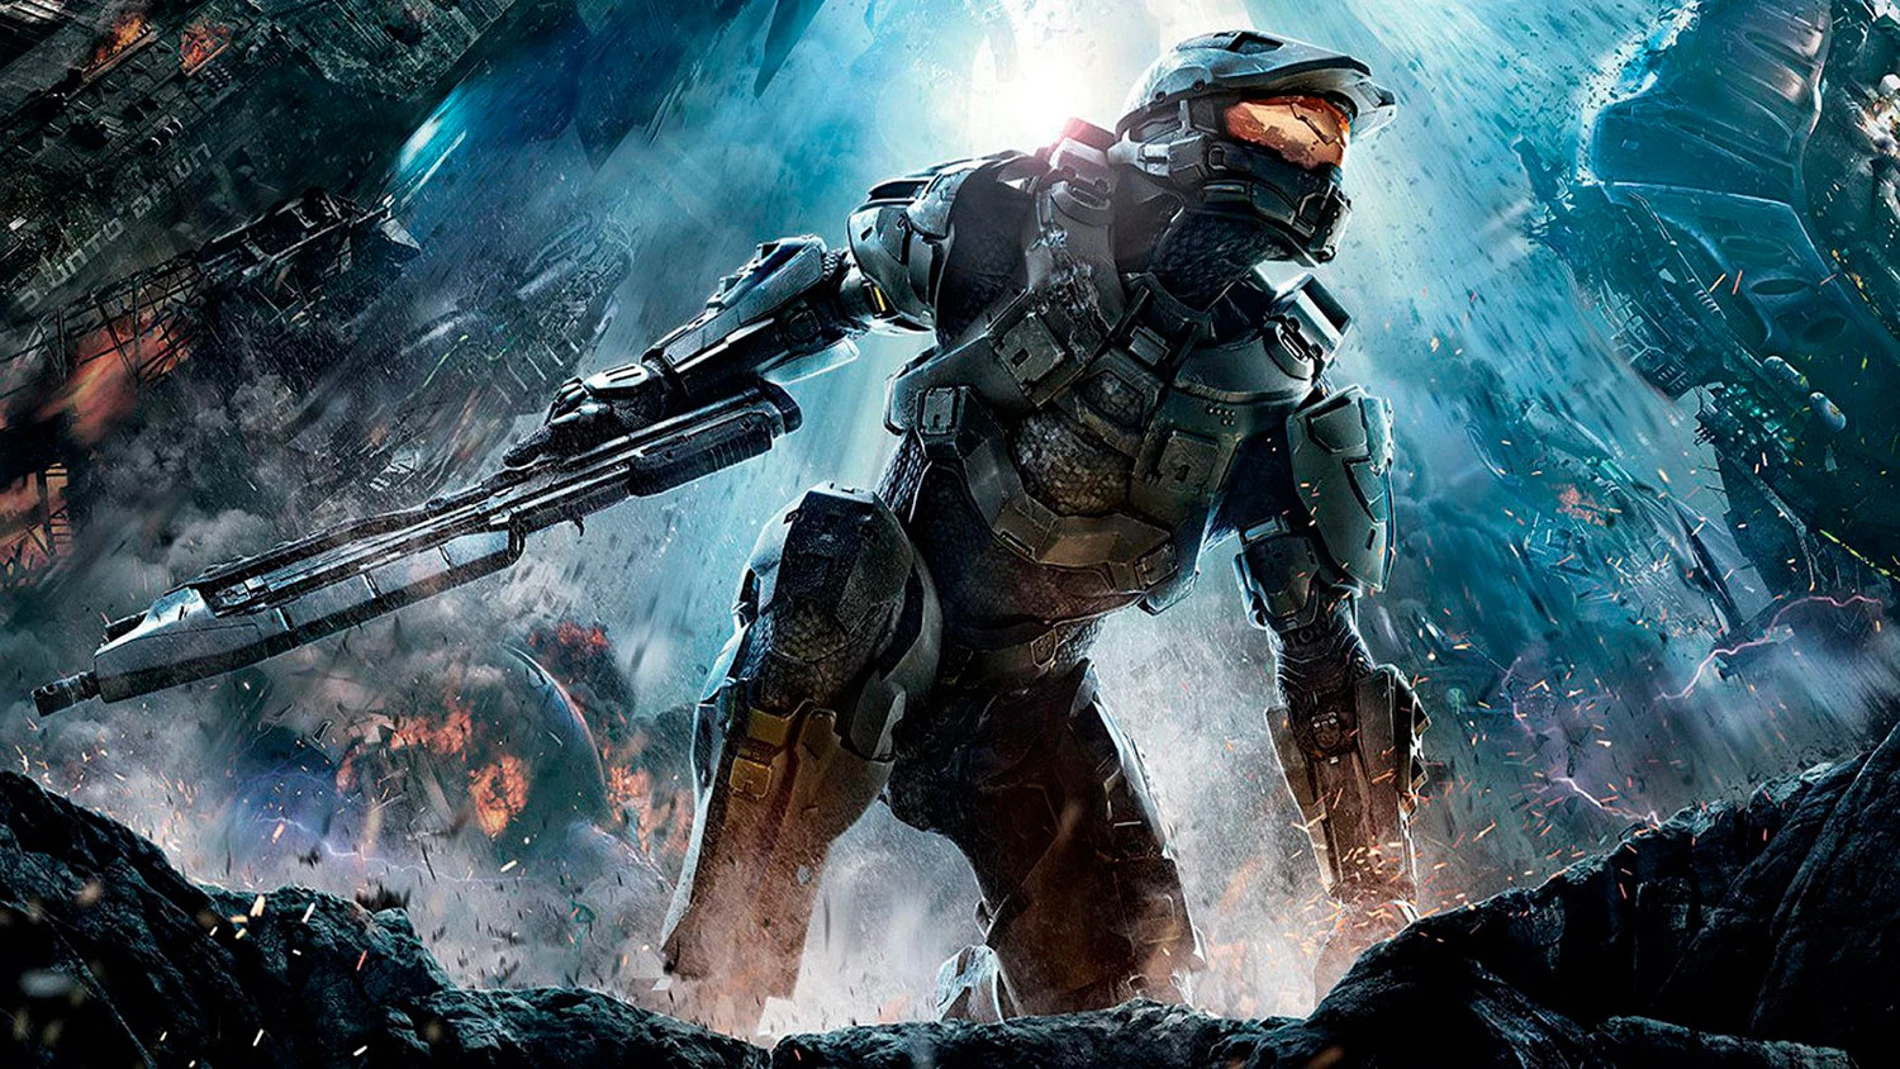 The Master Chief Collection: revelada la fecha de lanzamiento de Halo 4 en PC